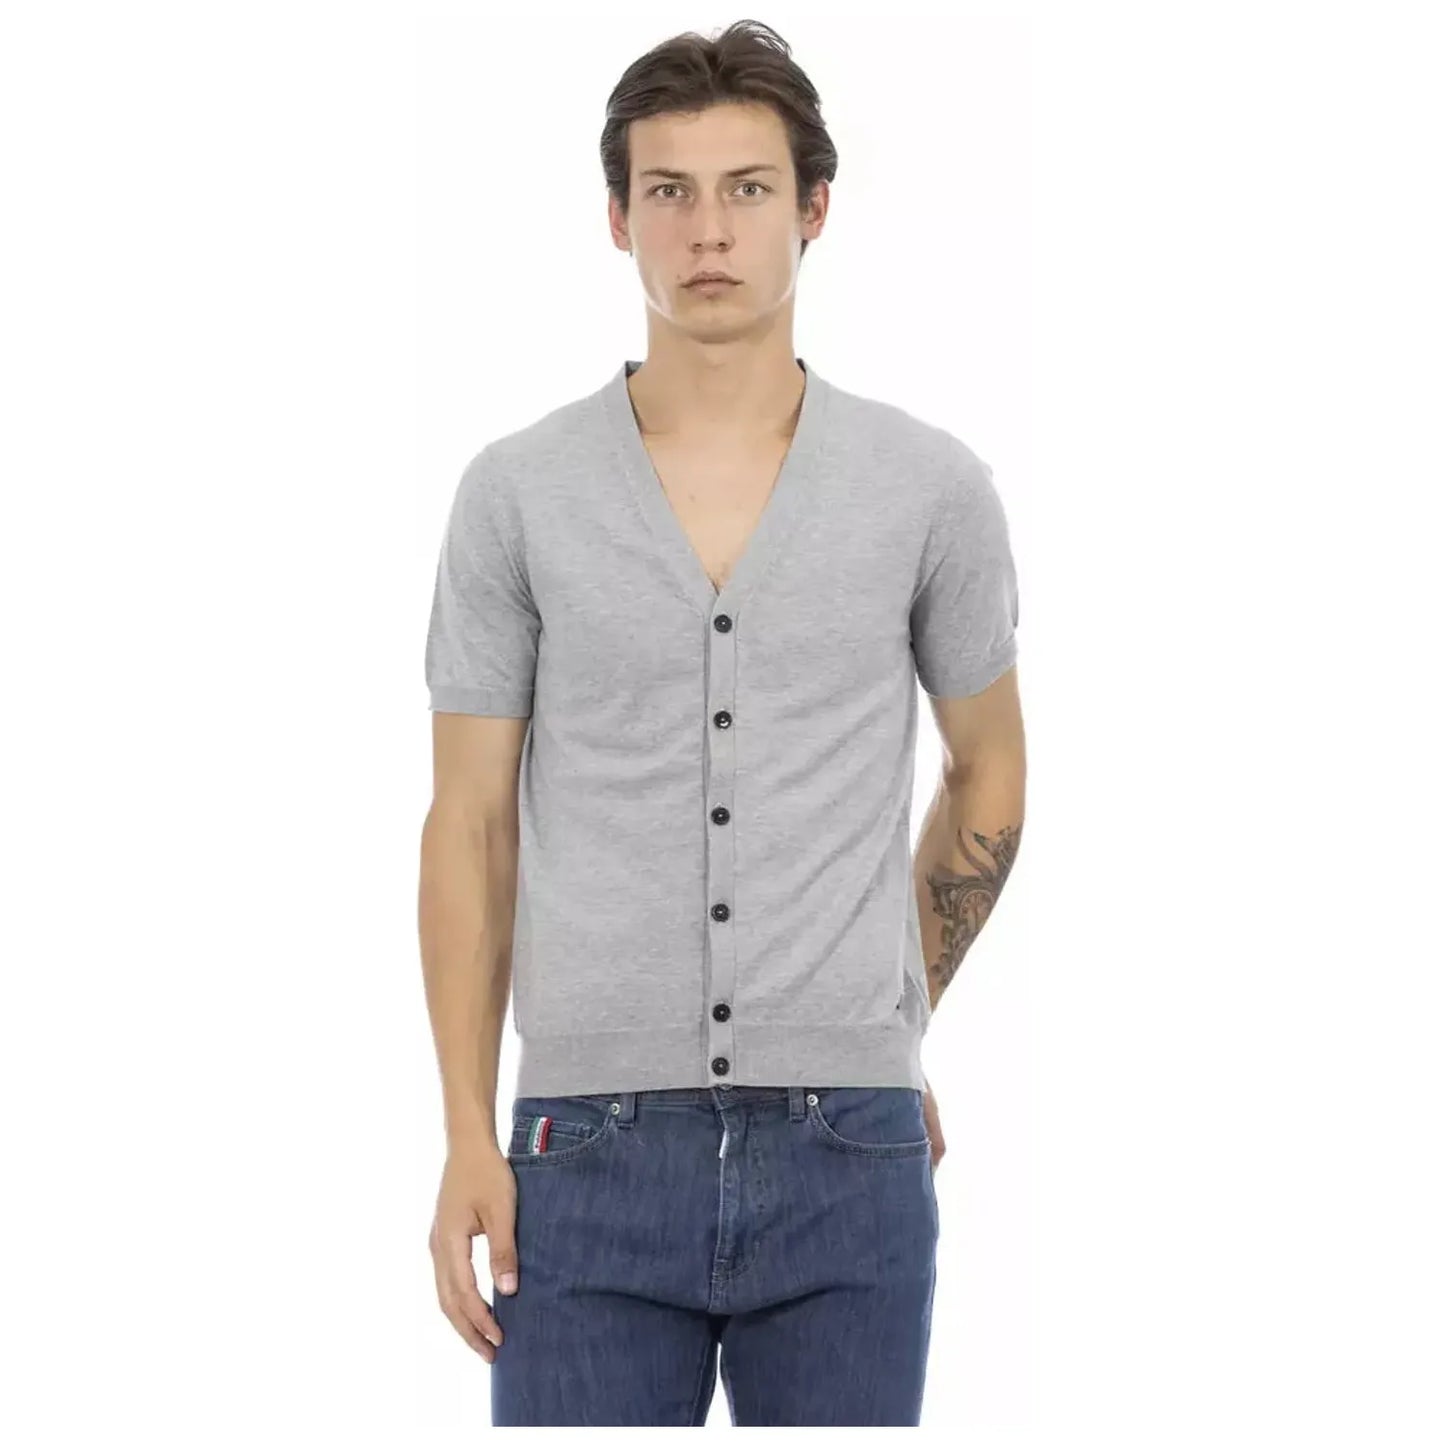 Baldinini Trend Elegant Gray V-Neck Cotton Sweater gray-cotton-sweater-17